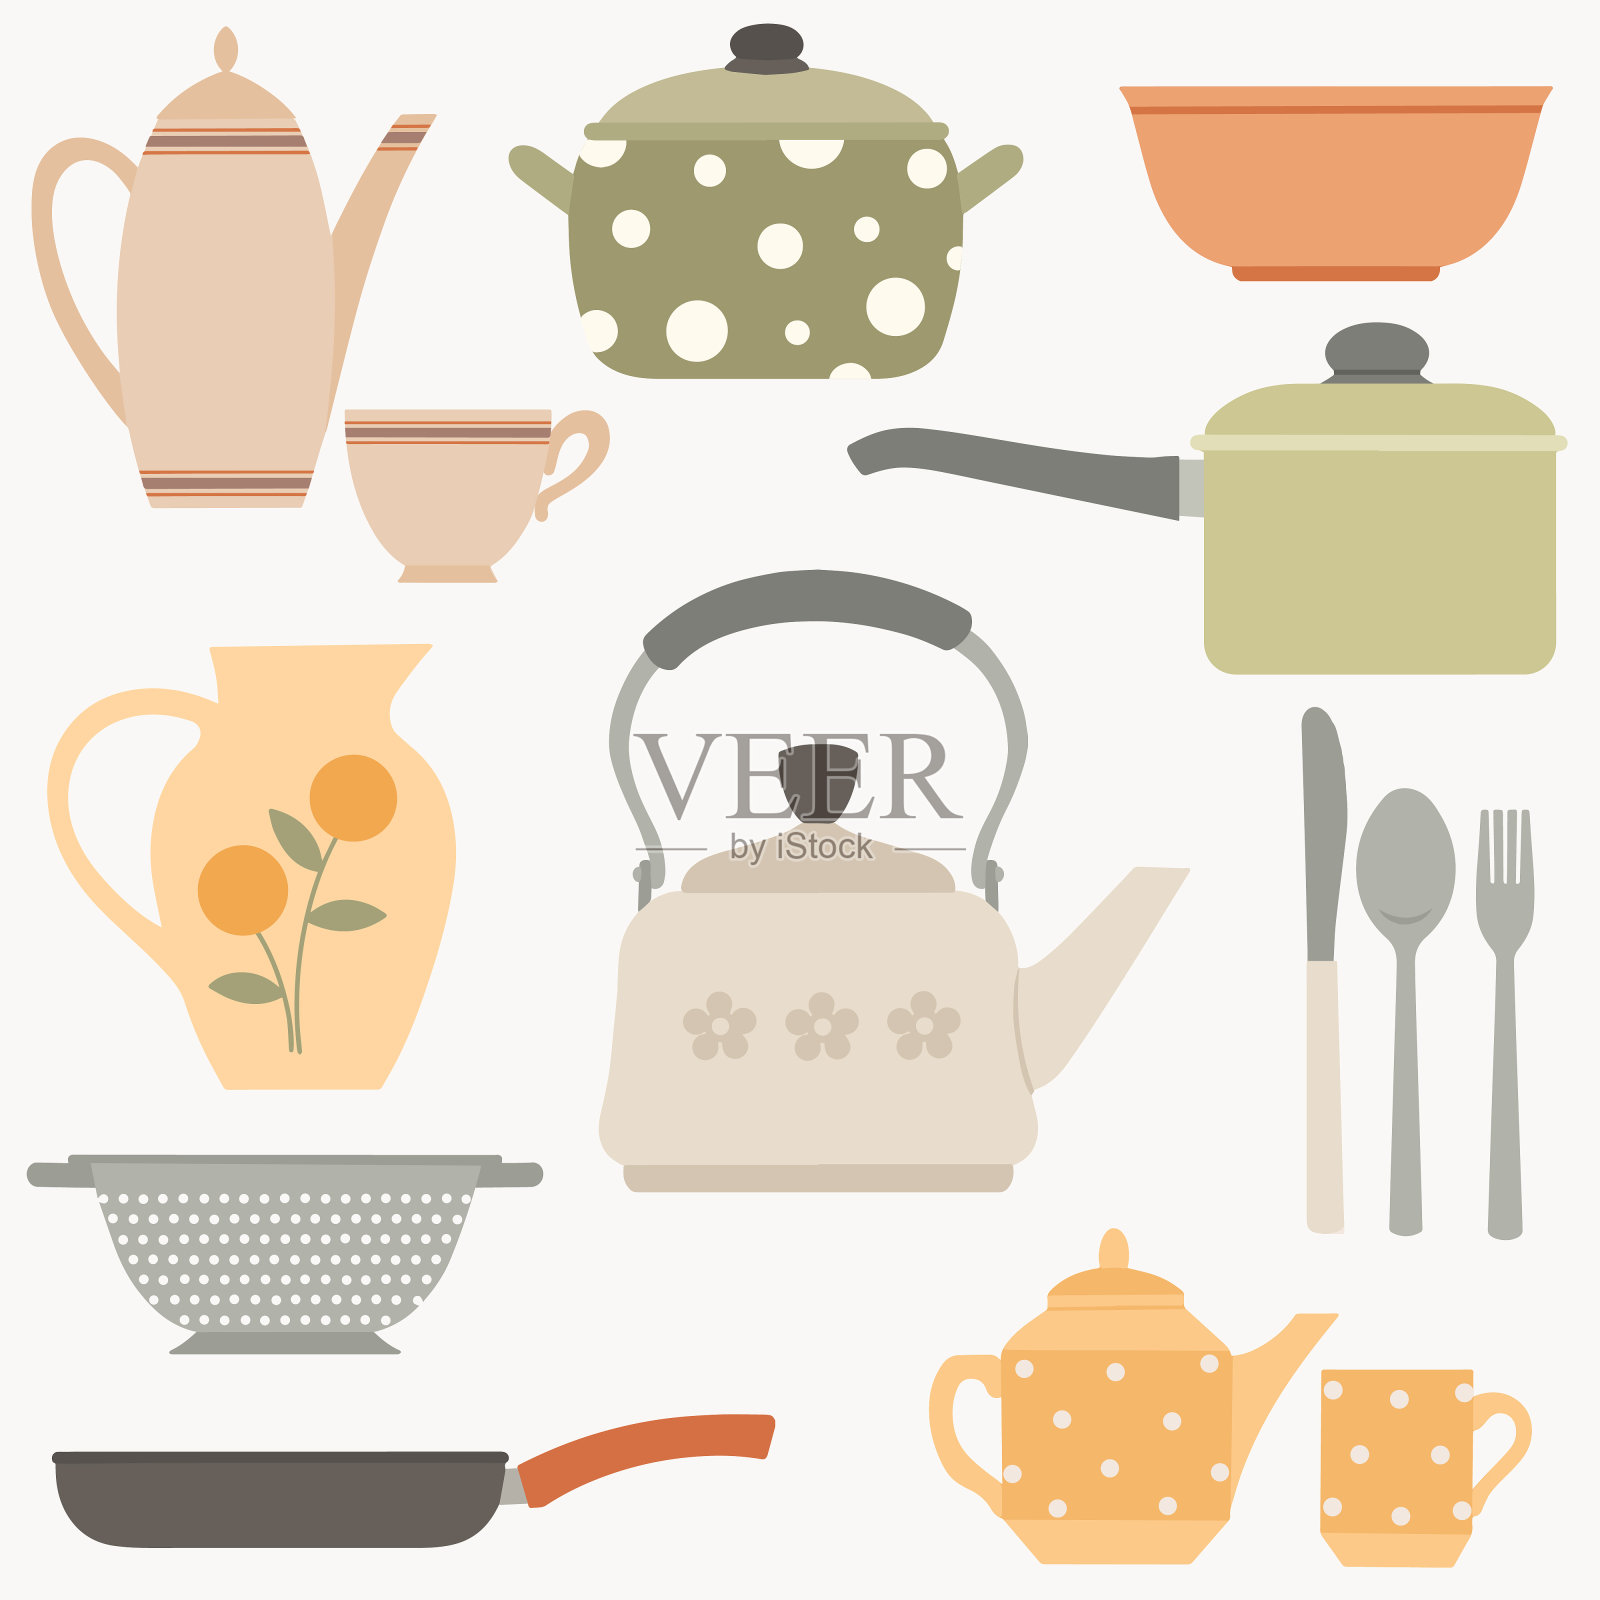 餐具及厨房配件:壶、煎锅、水壶、咖啡壶、杯子。插画图片素材